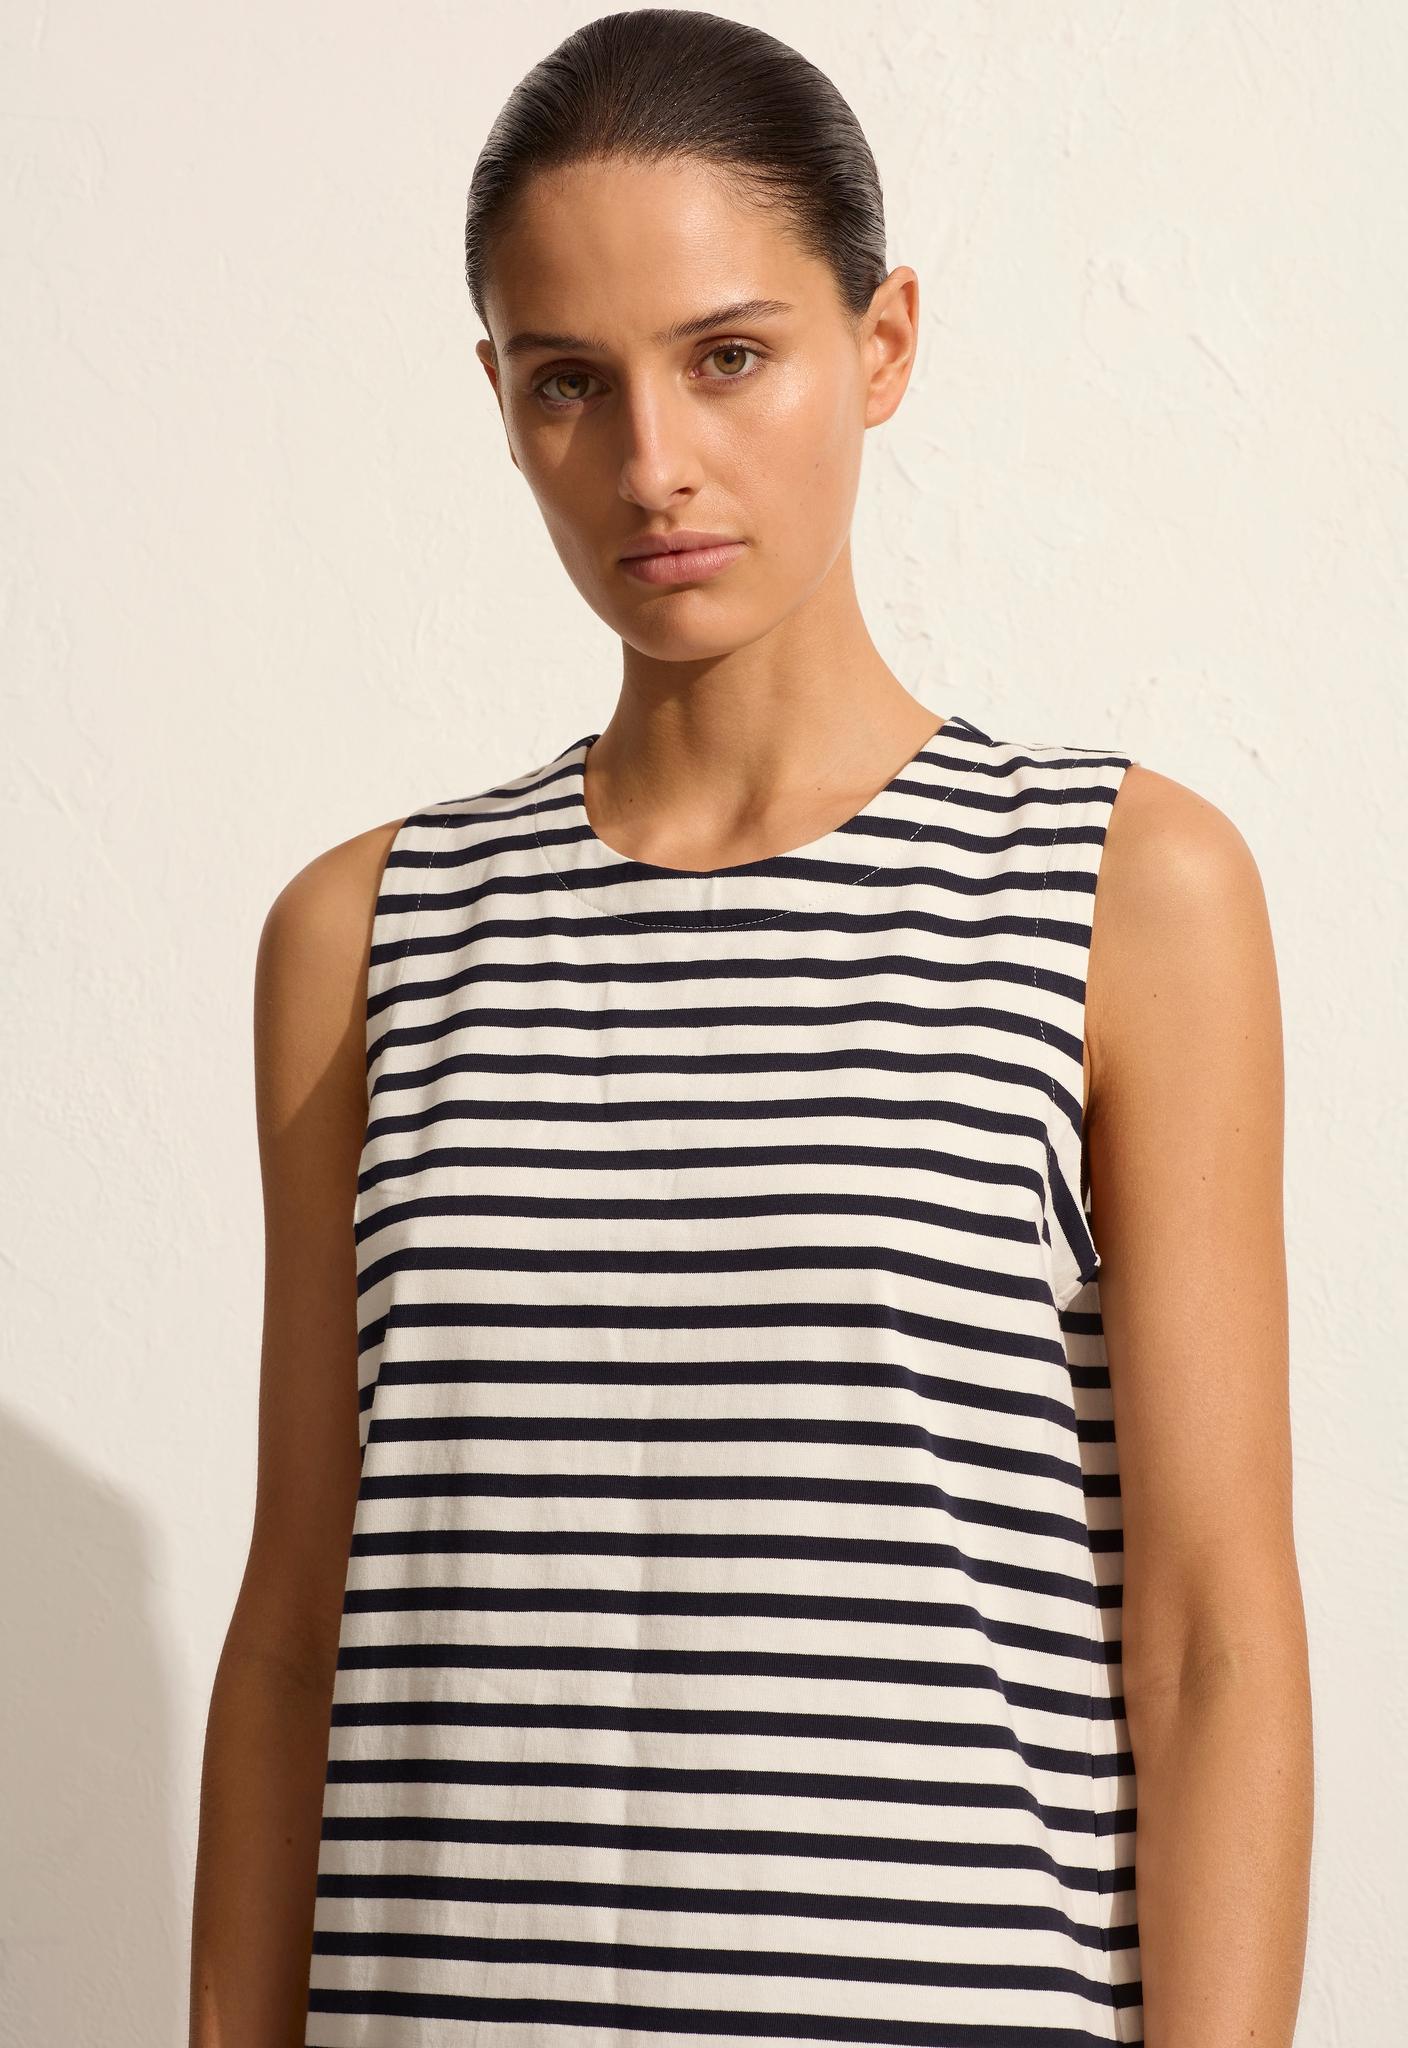 Stripe Shift Dress - Navy/White - Matteau